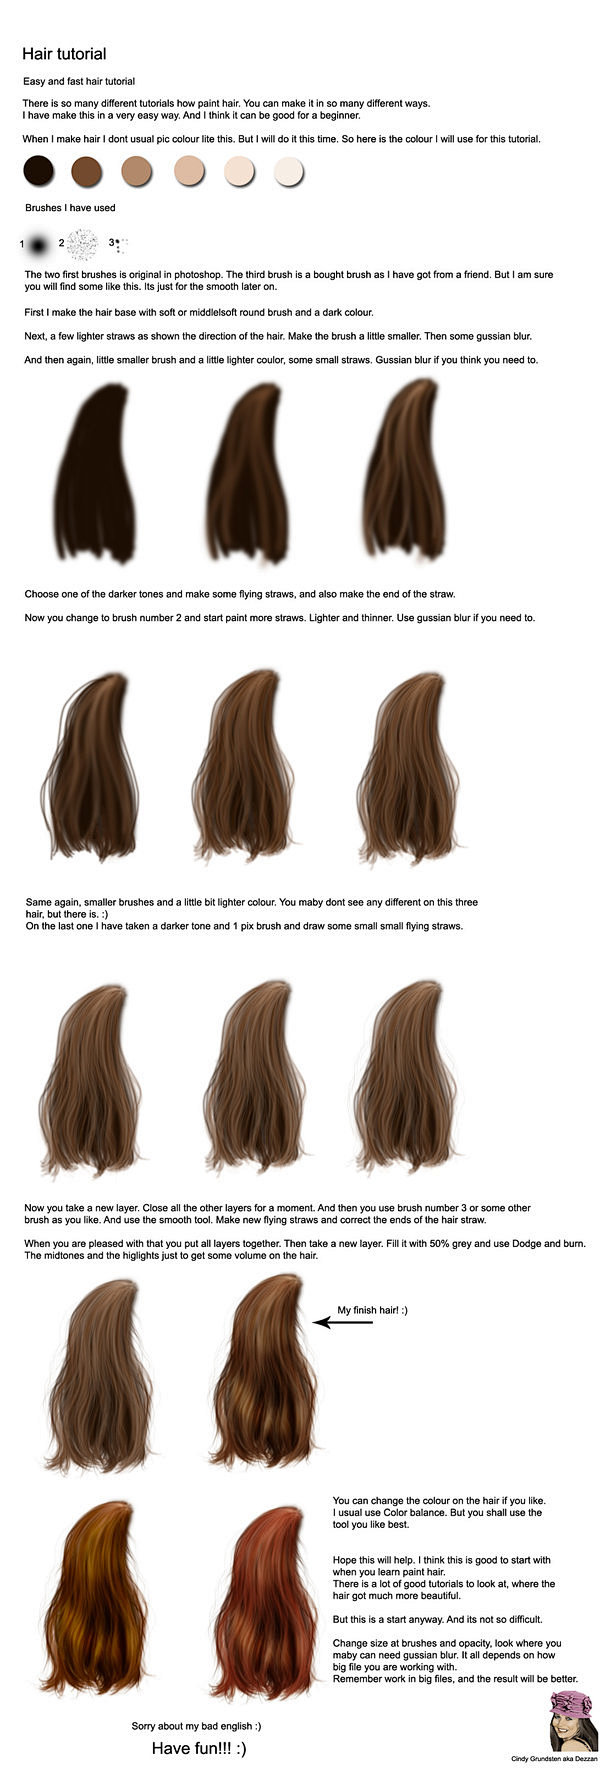 Hair tutorial by Cin...